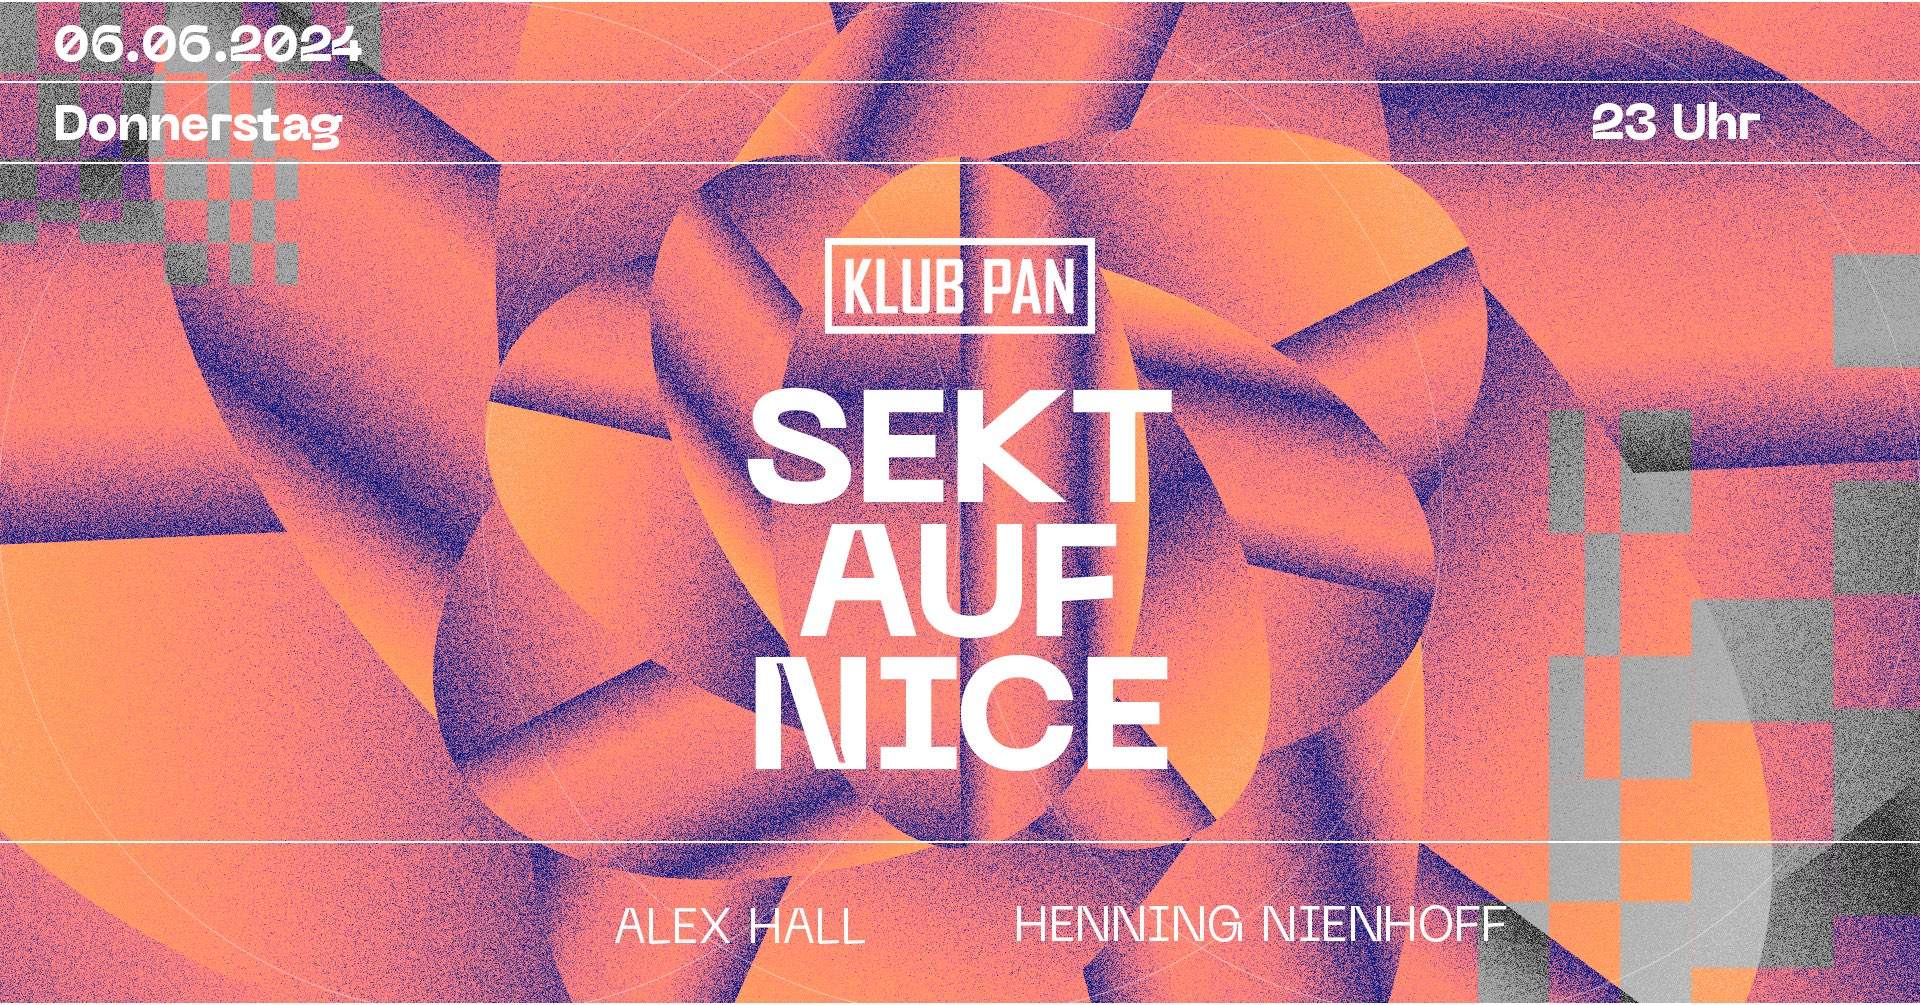 Alex Hall x Henning Nienhoff - フライヤー表